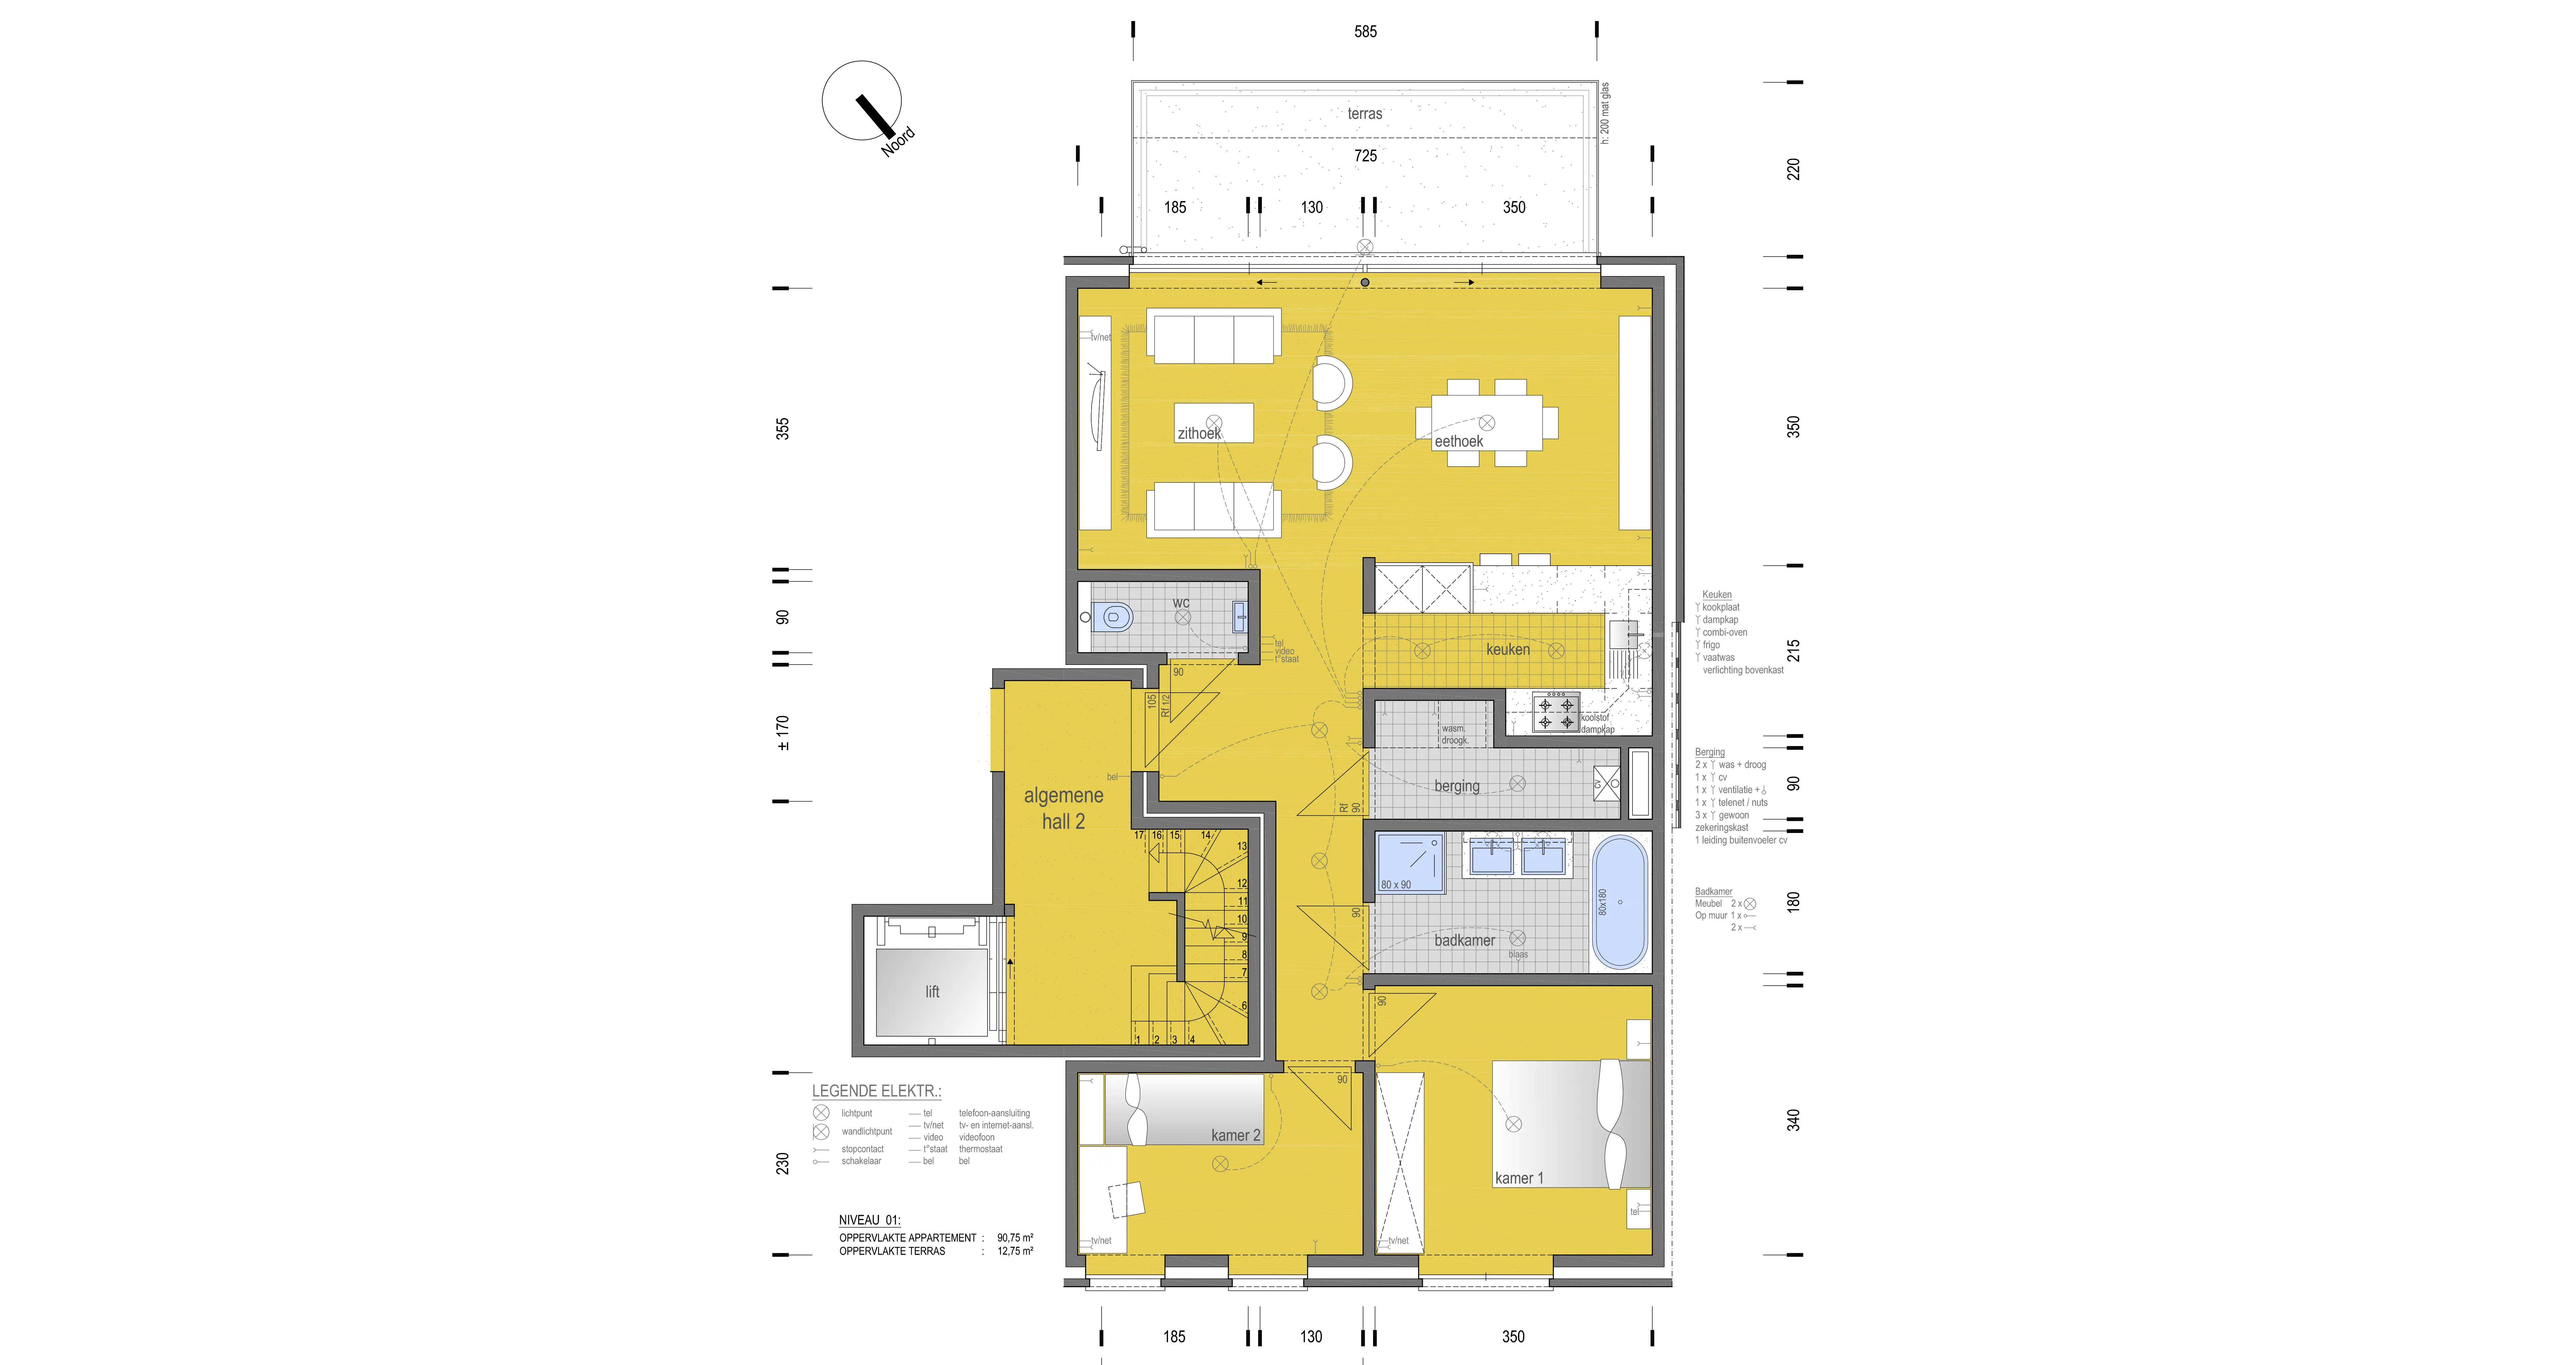 Nieuwbouw appartement met groot terras (31/012-31/011-33/012)